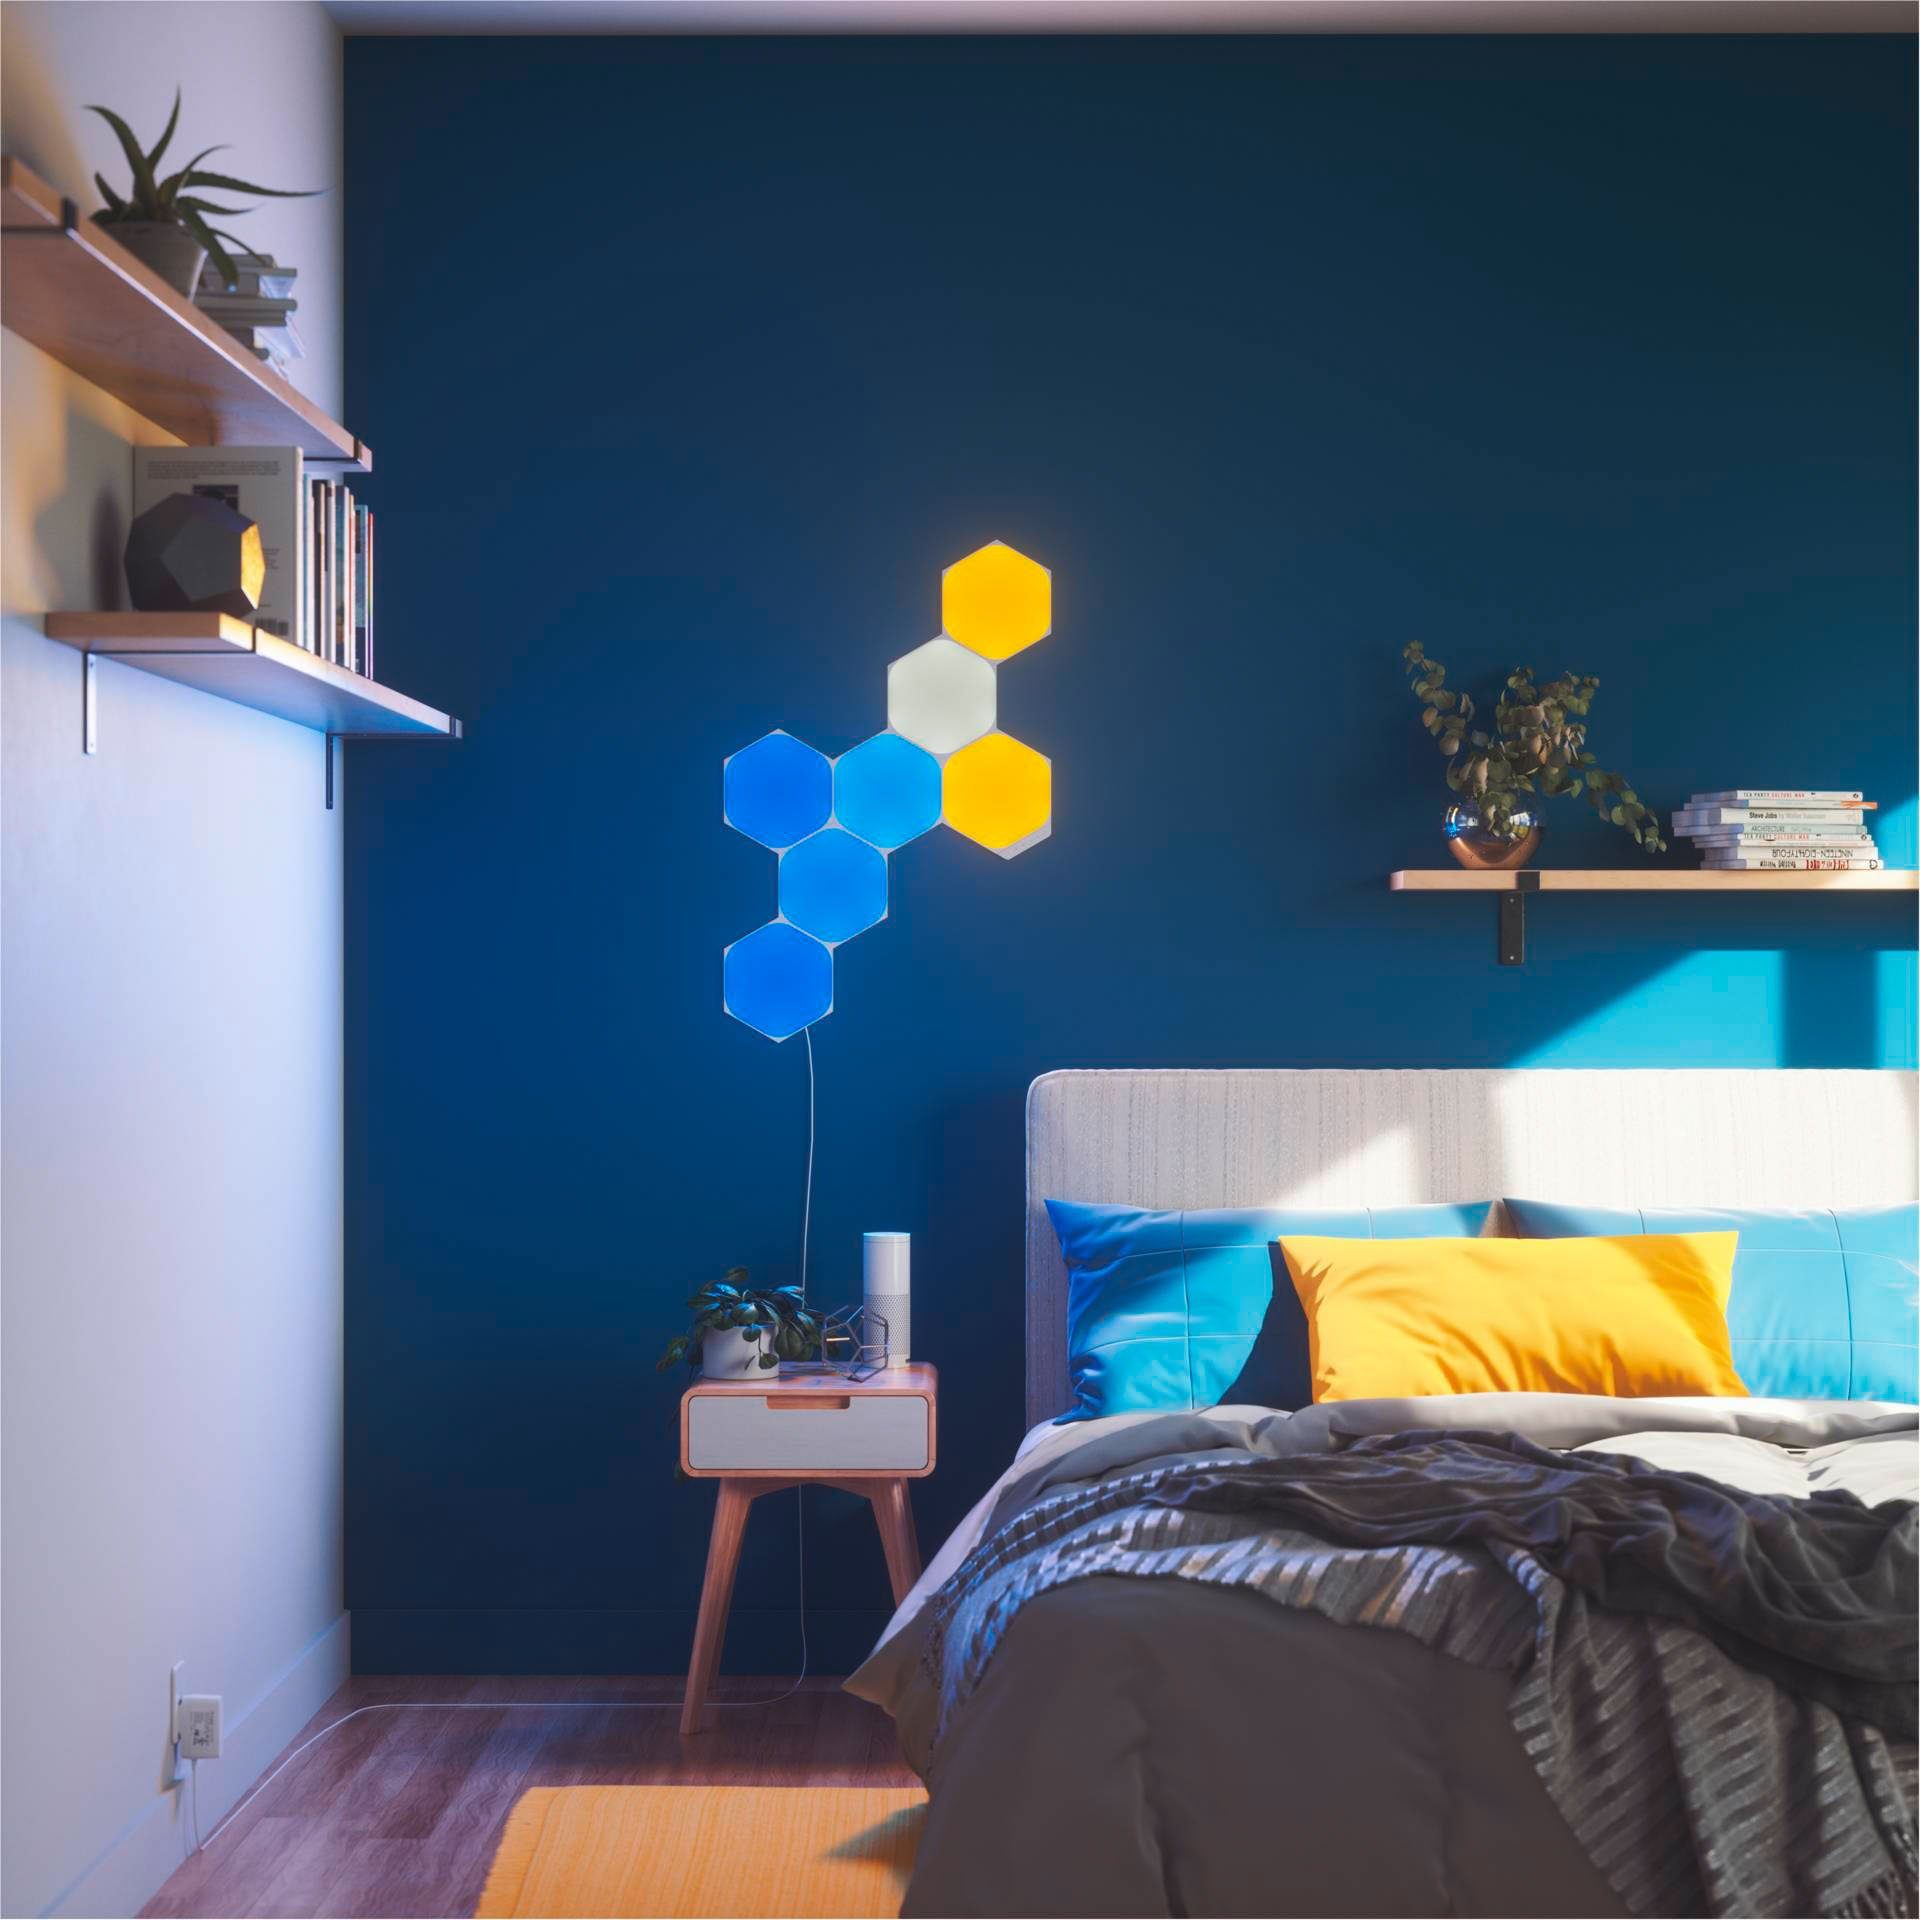 fest integriert, Hexagons, Dimmfunktion, nanoleaf LED Panel LED Farbwechsler